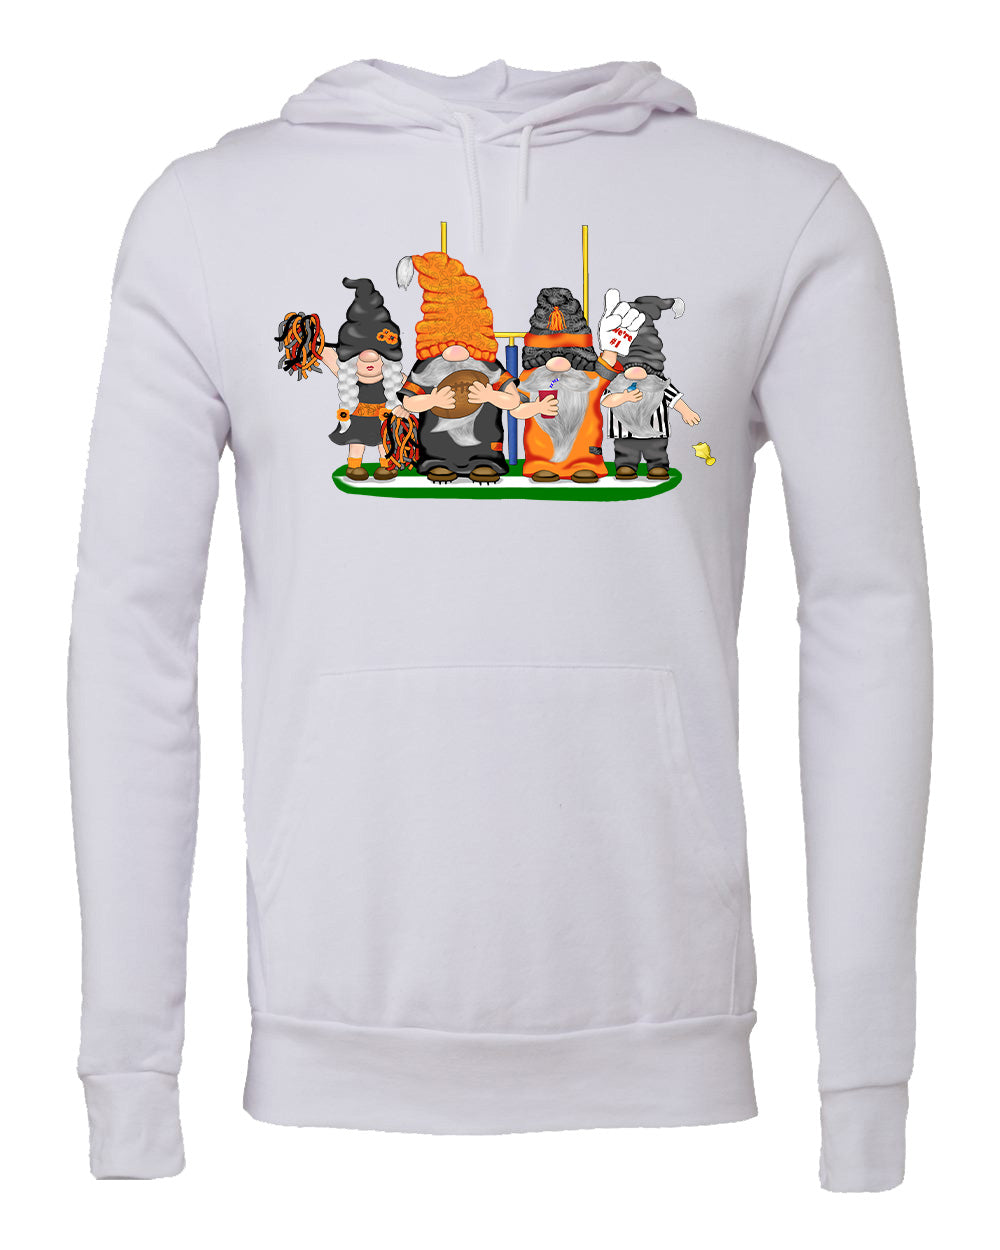 Black & Orange Football Gnomes (similar to Cincinnati) on Unisex Hoodie